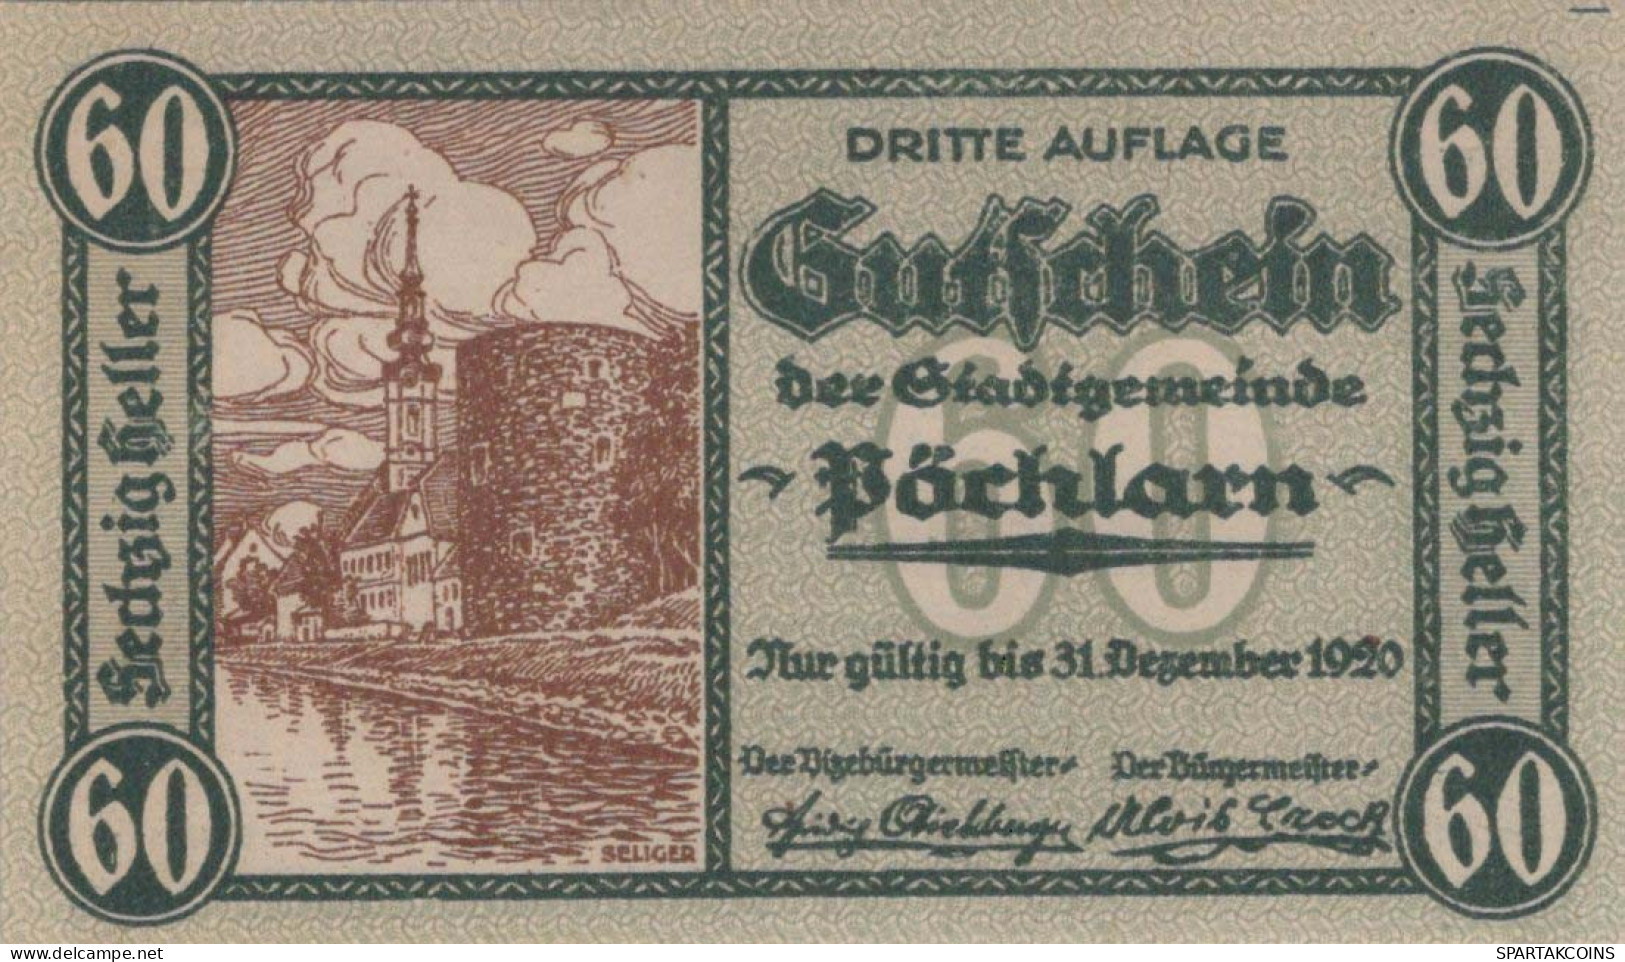 60 HELLER 1920 Stadt PoCHLARN Niedrigeren Österreich Notgeld Banknote #PE306 - [11] Emisiones Locales